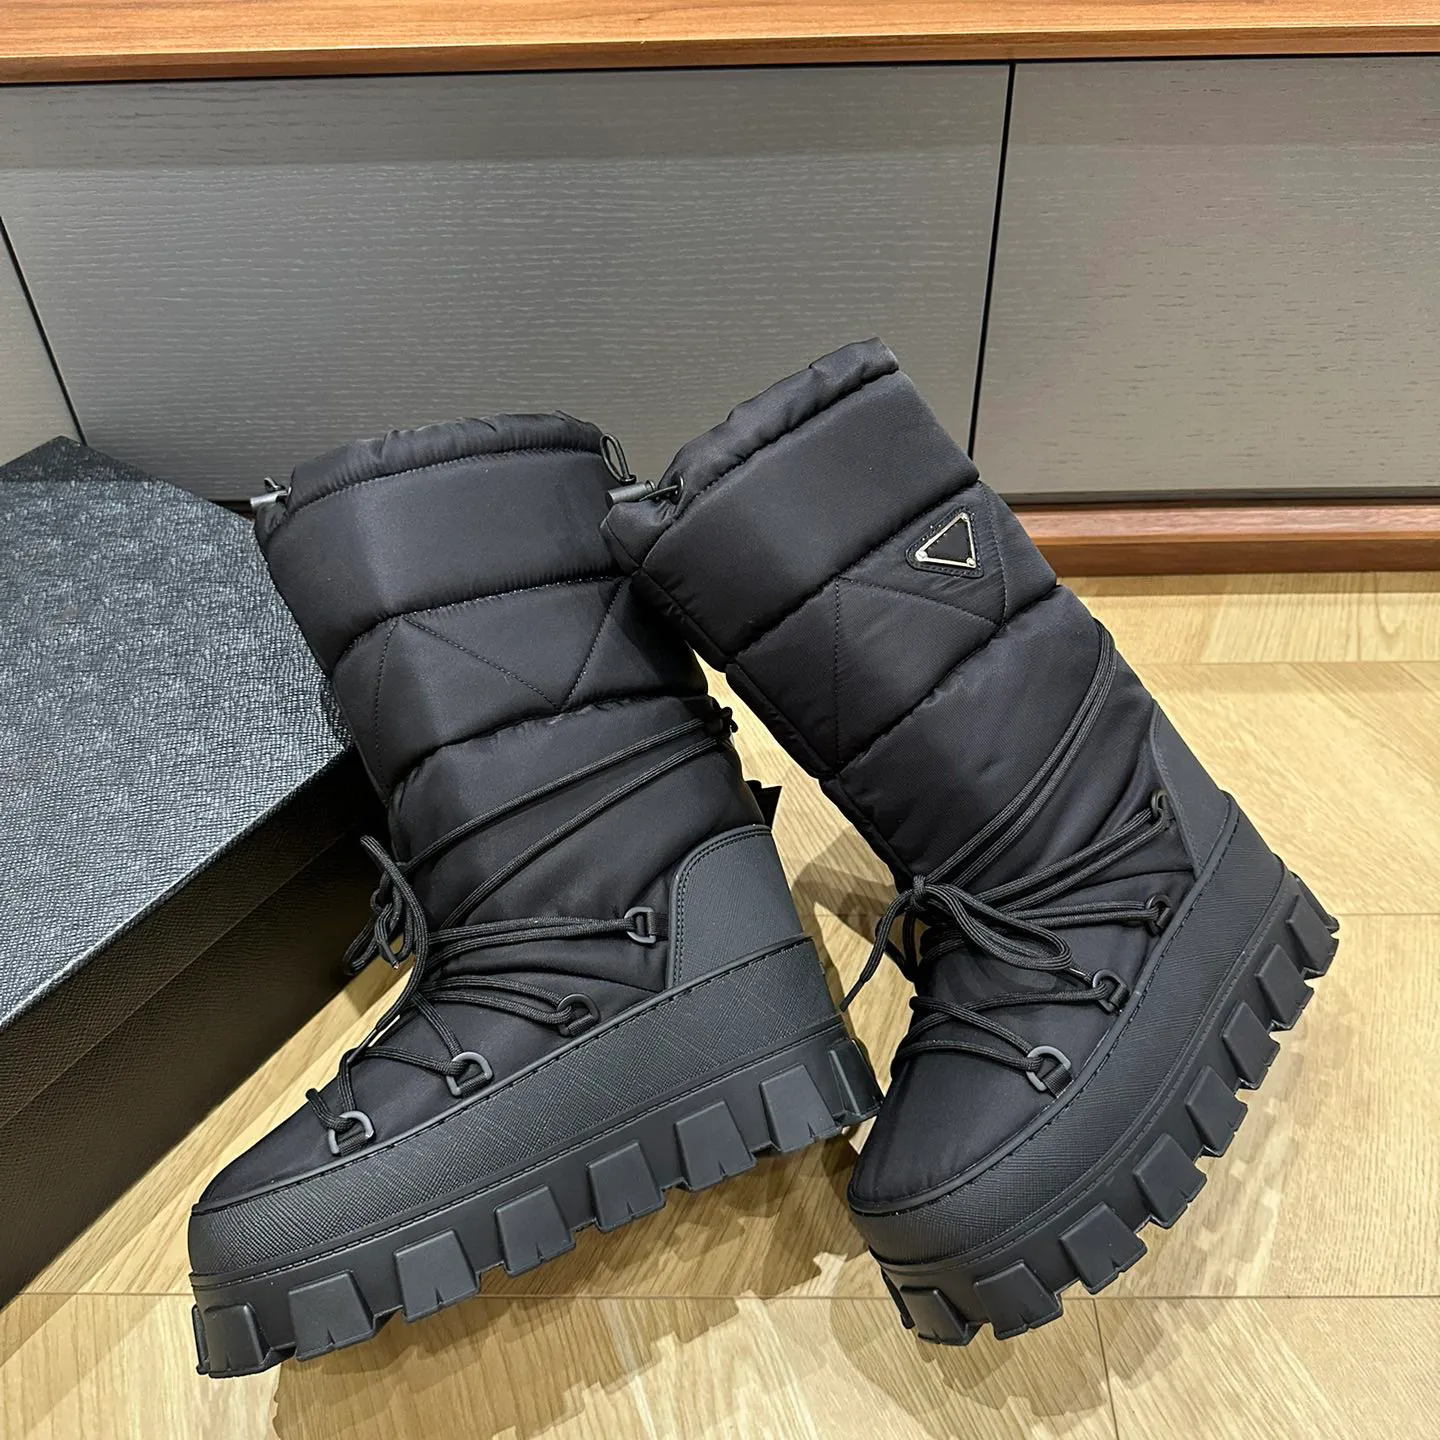 Üçgen-Logo Uzun Monolit savaş kayak patik Naylon Kar Botları Slip-On Tıknaz Dantel Yuvarlak Toe Knight Boot Luxury Tasarımcı Moda Kadın Ayakkabı Fabrika Ayakkabı